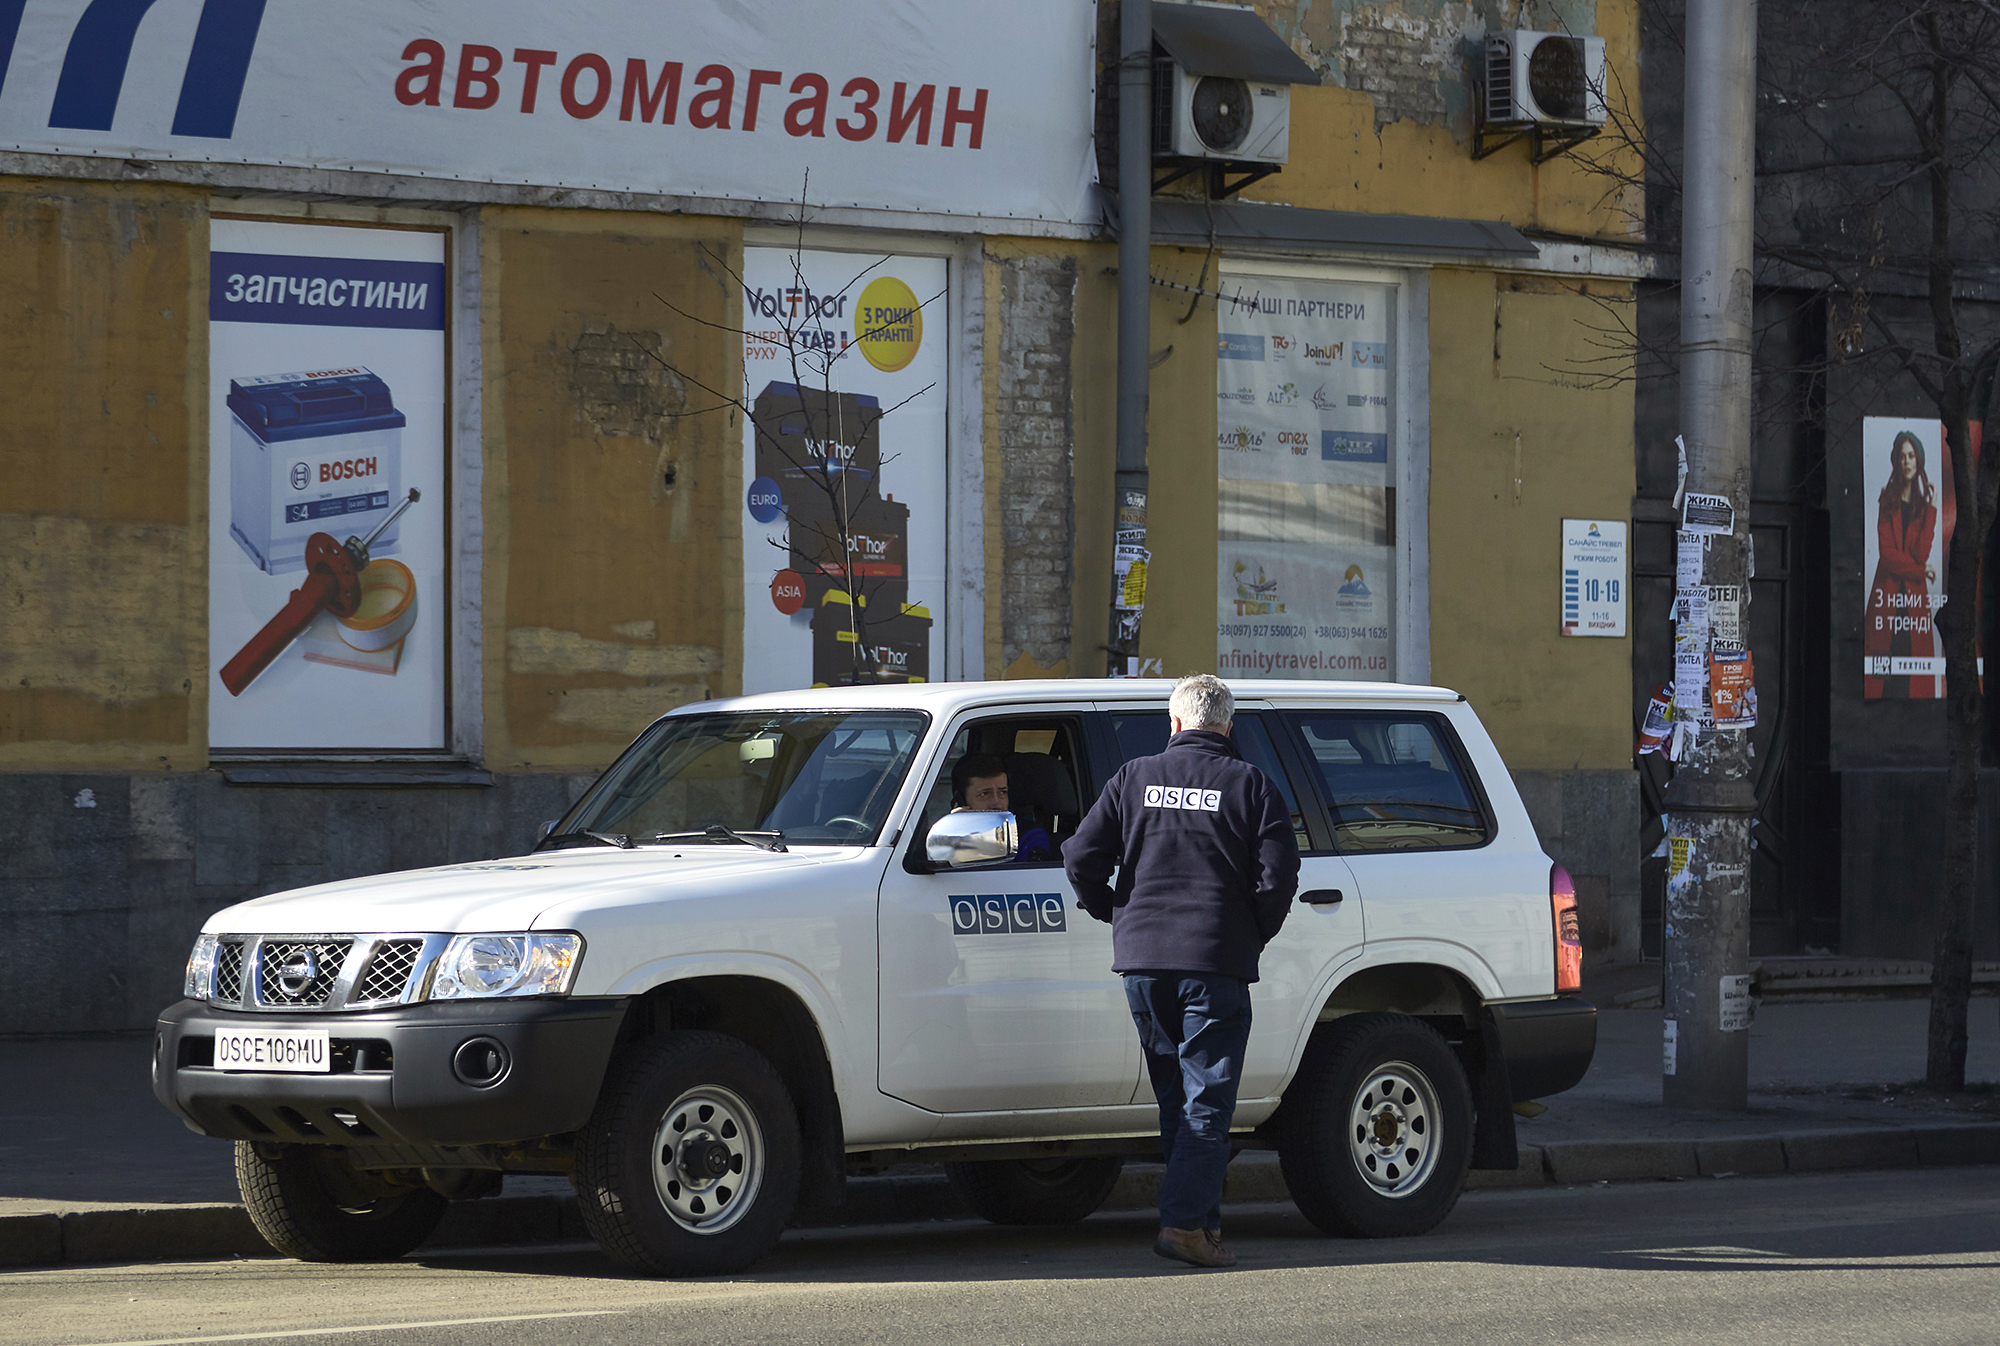 An OSCE vehicle in Kyiv.